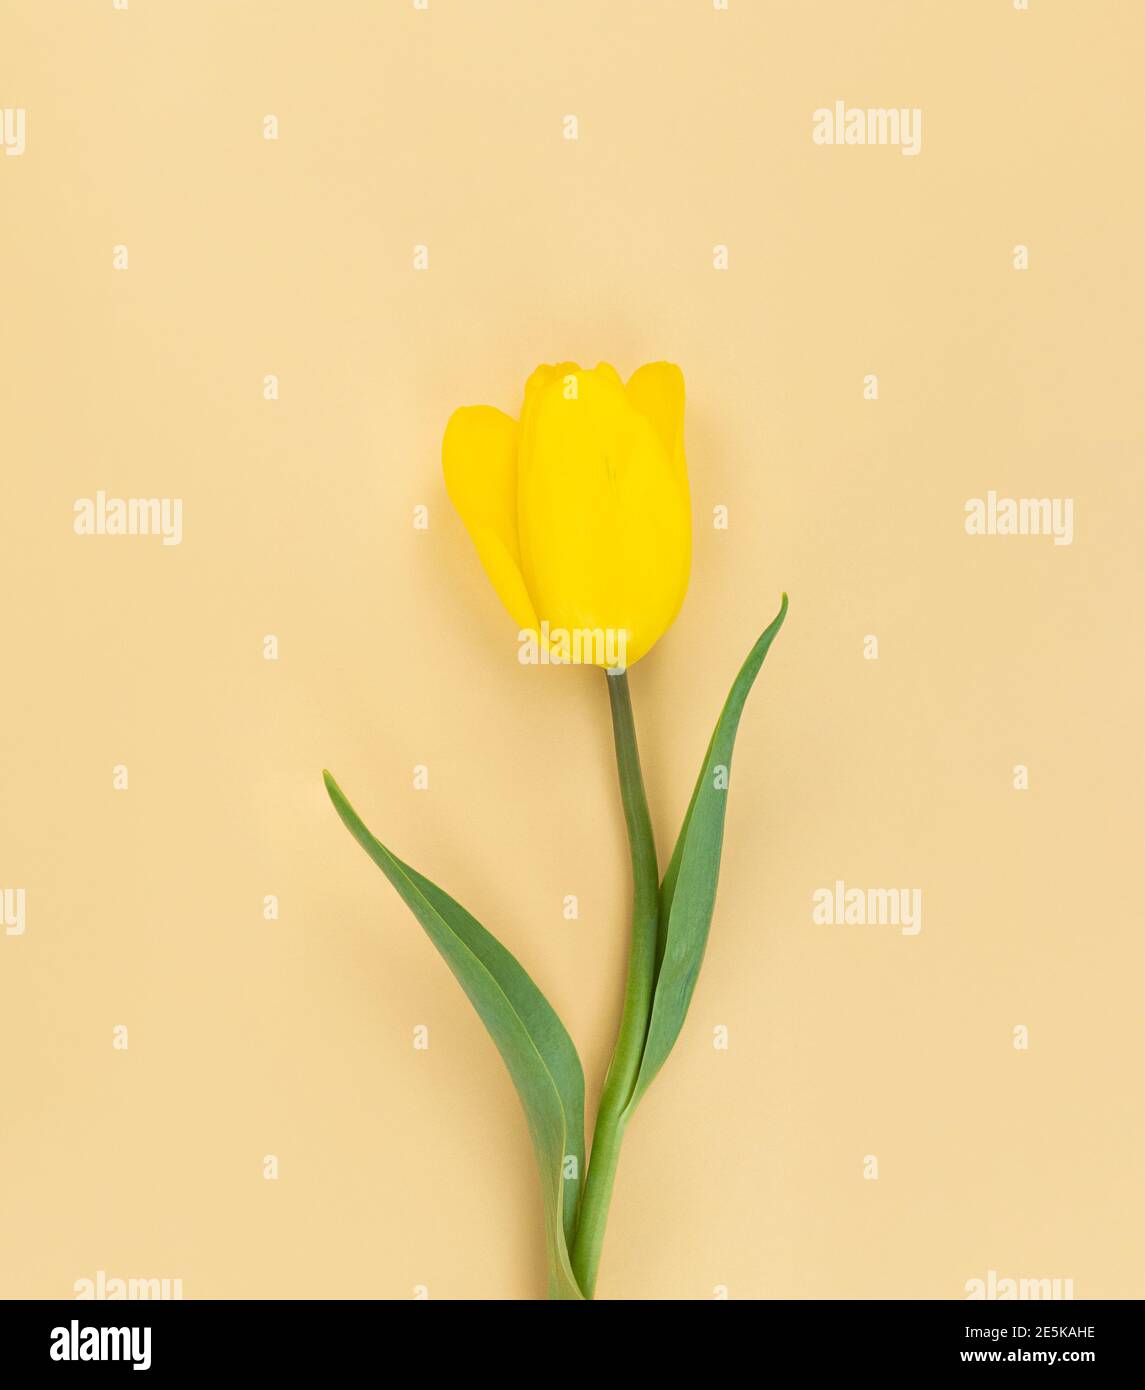 Tulipe jaune sur fond beige. Photo Mimimaliste Flat Lay. Banque D'Images